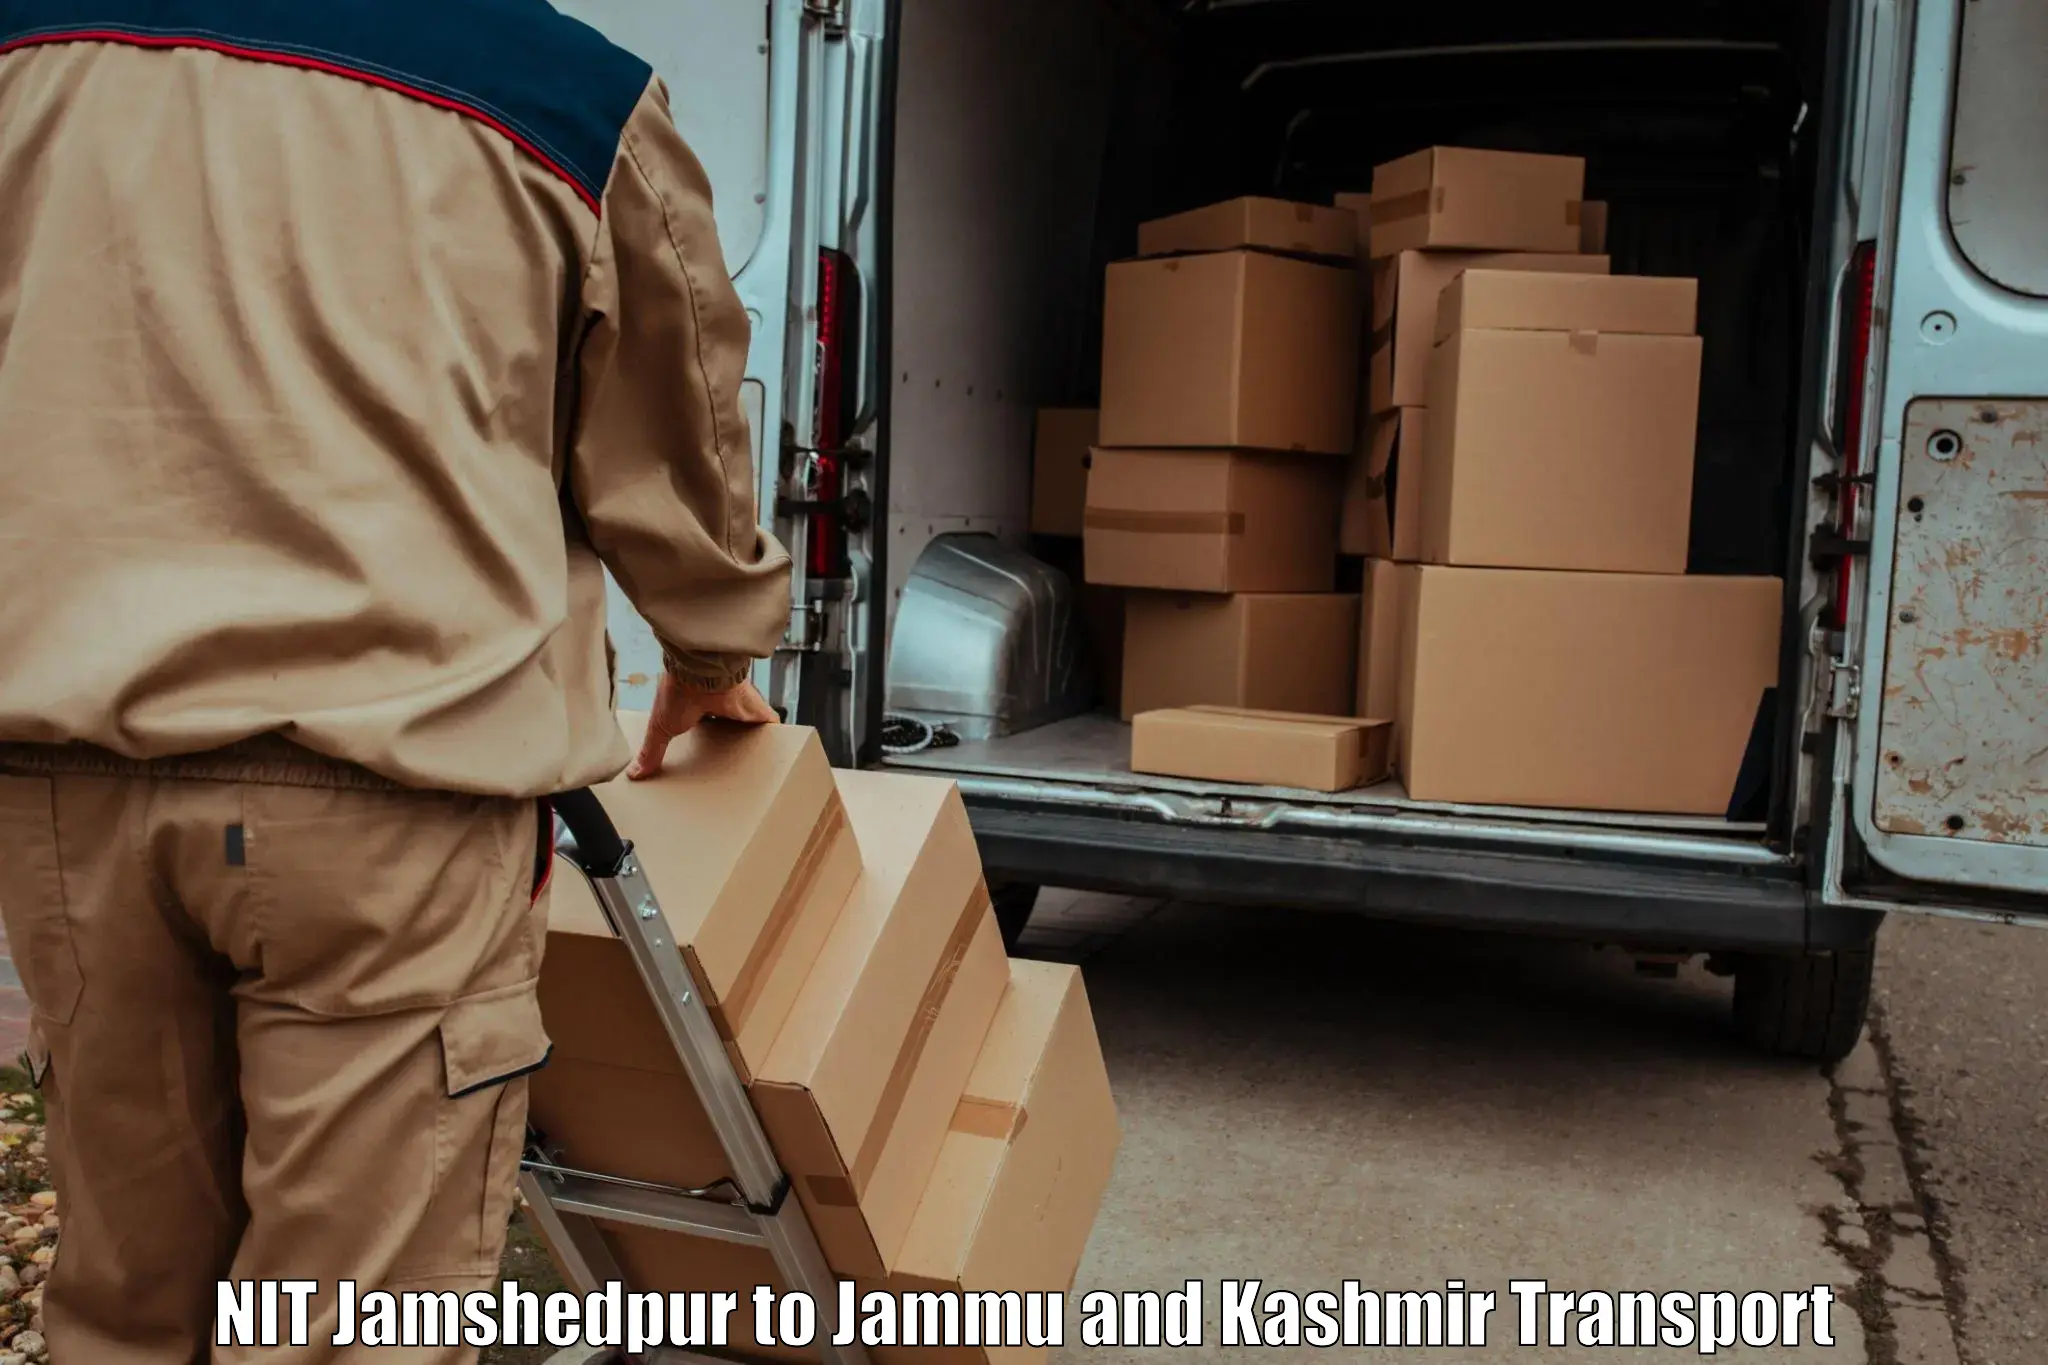 Lorry transport service NIT Jamshedpur to Ramnagar Udhampur